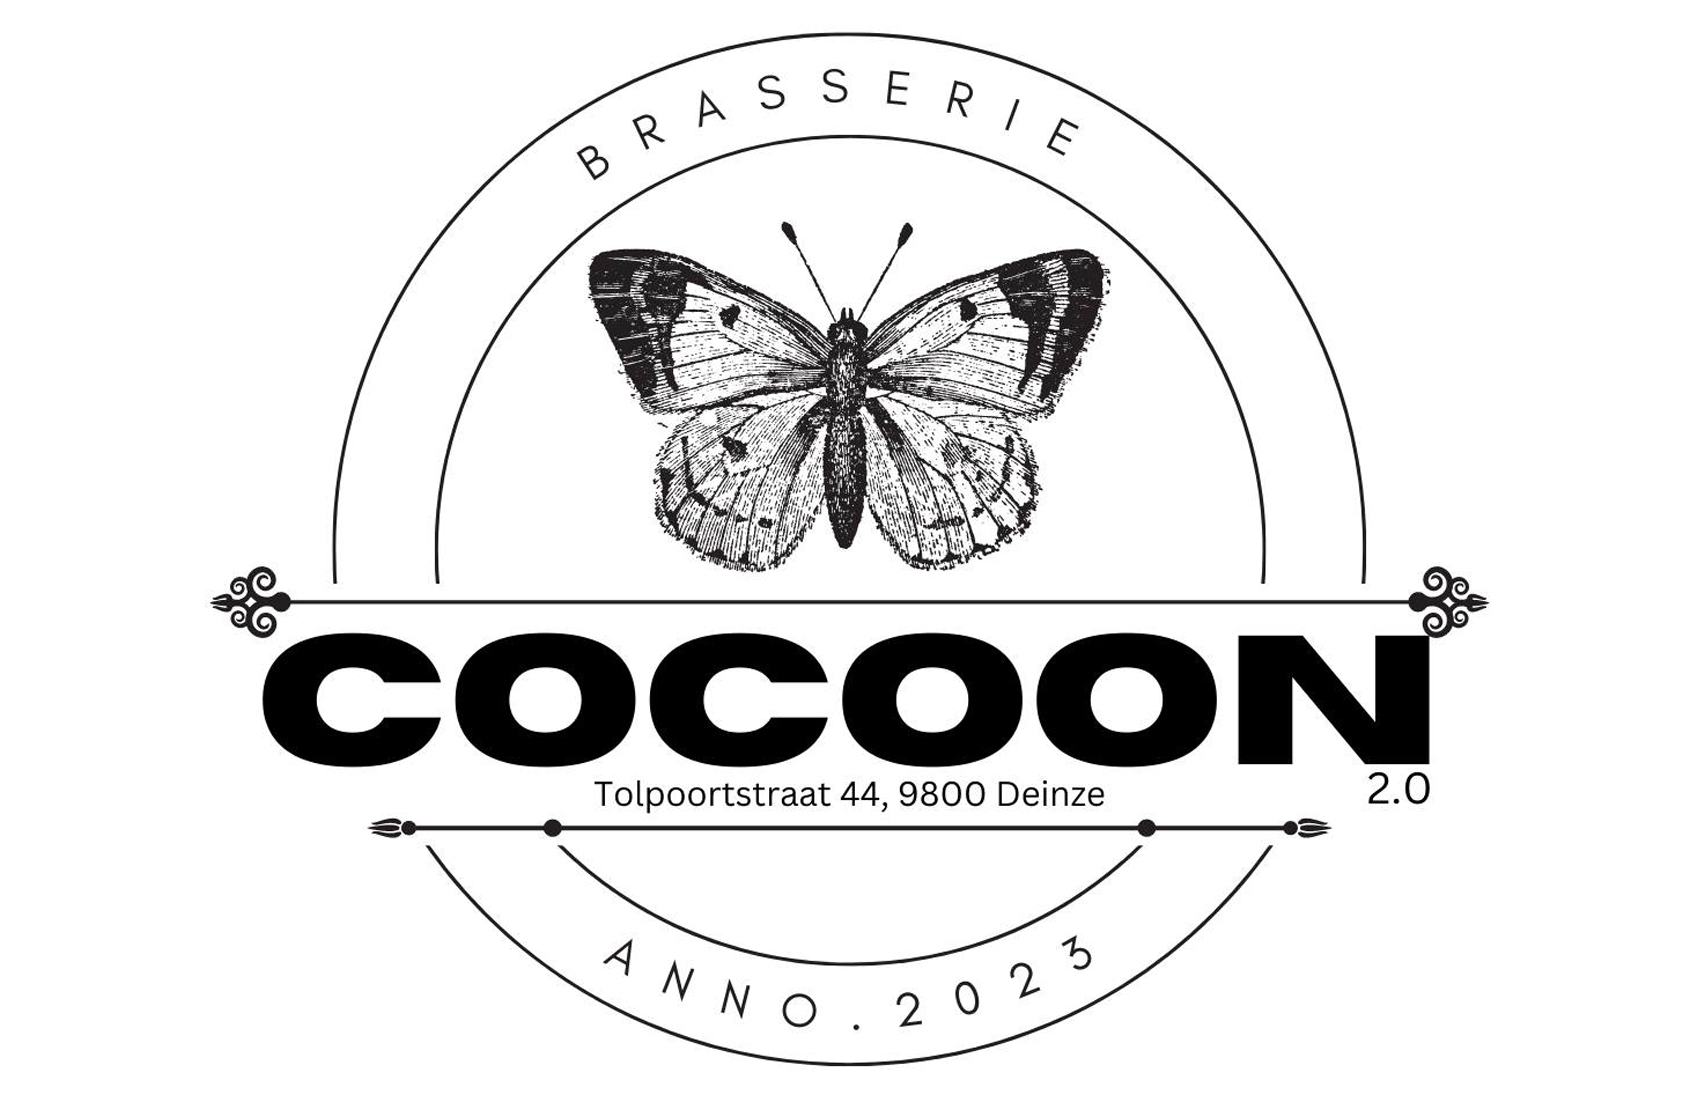 Cocoon 2.0 brasserie